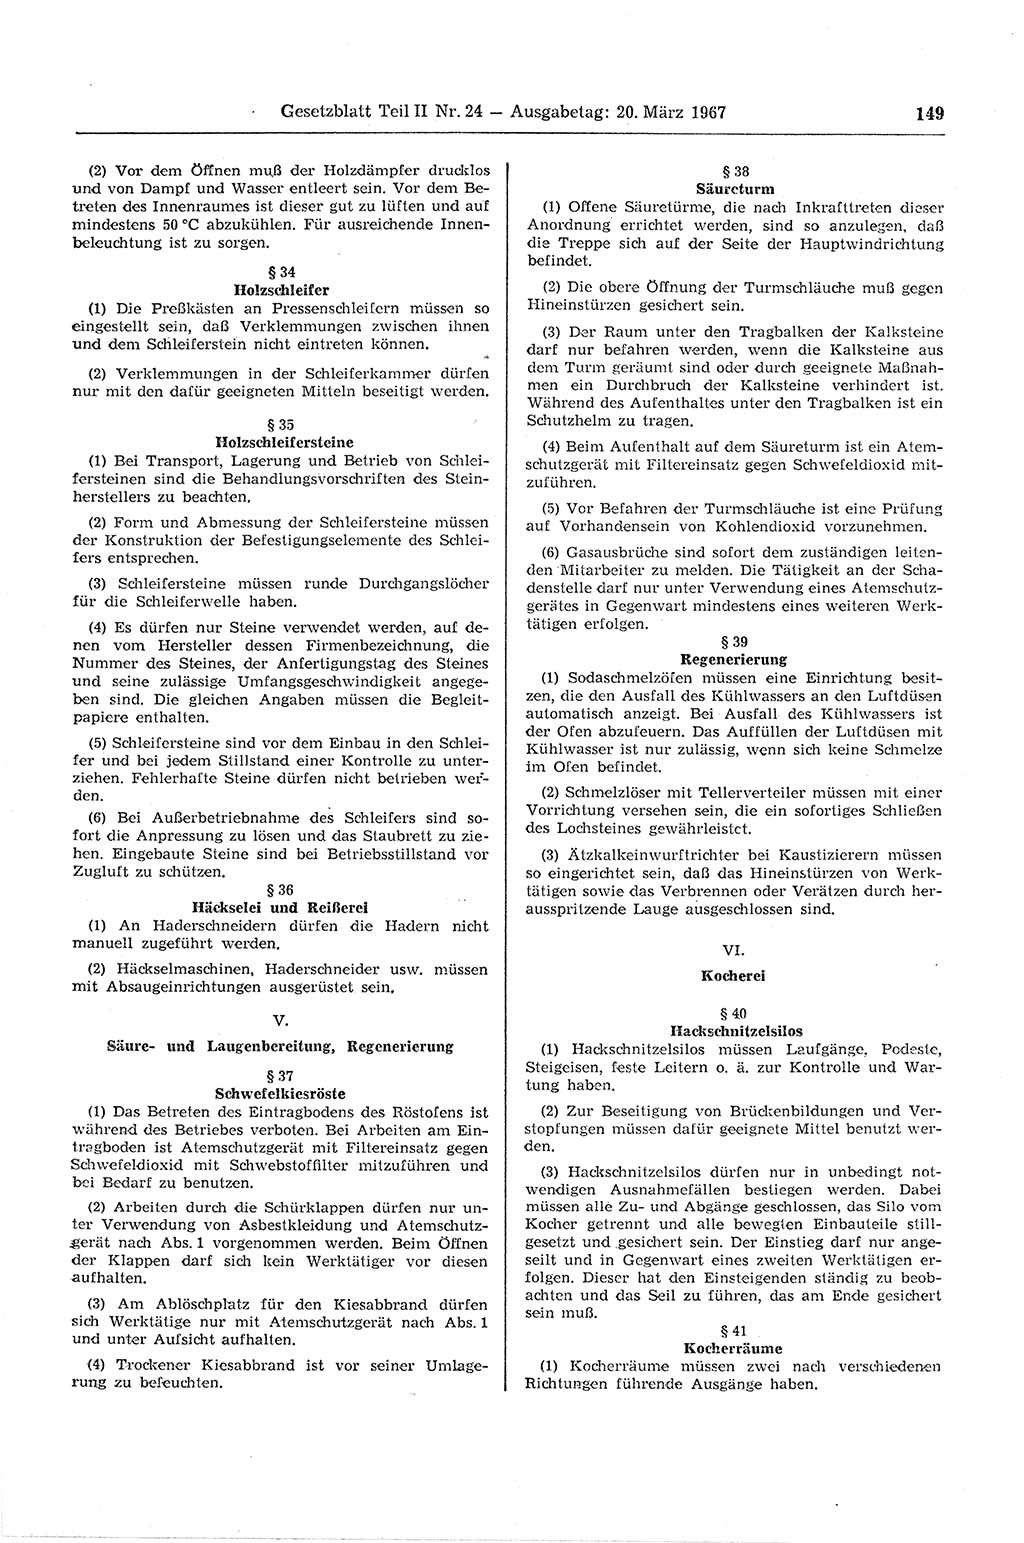 Gesetzblatt (GBl.) der Deutschen Demokratischen Republik (DDR) Teil ⅠⅠ 1967, Seite 149 (GBl. DDR ⅠⅠ 1967, S. 149)